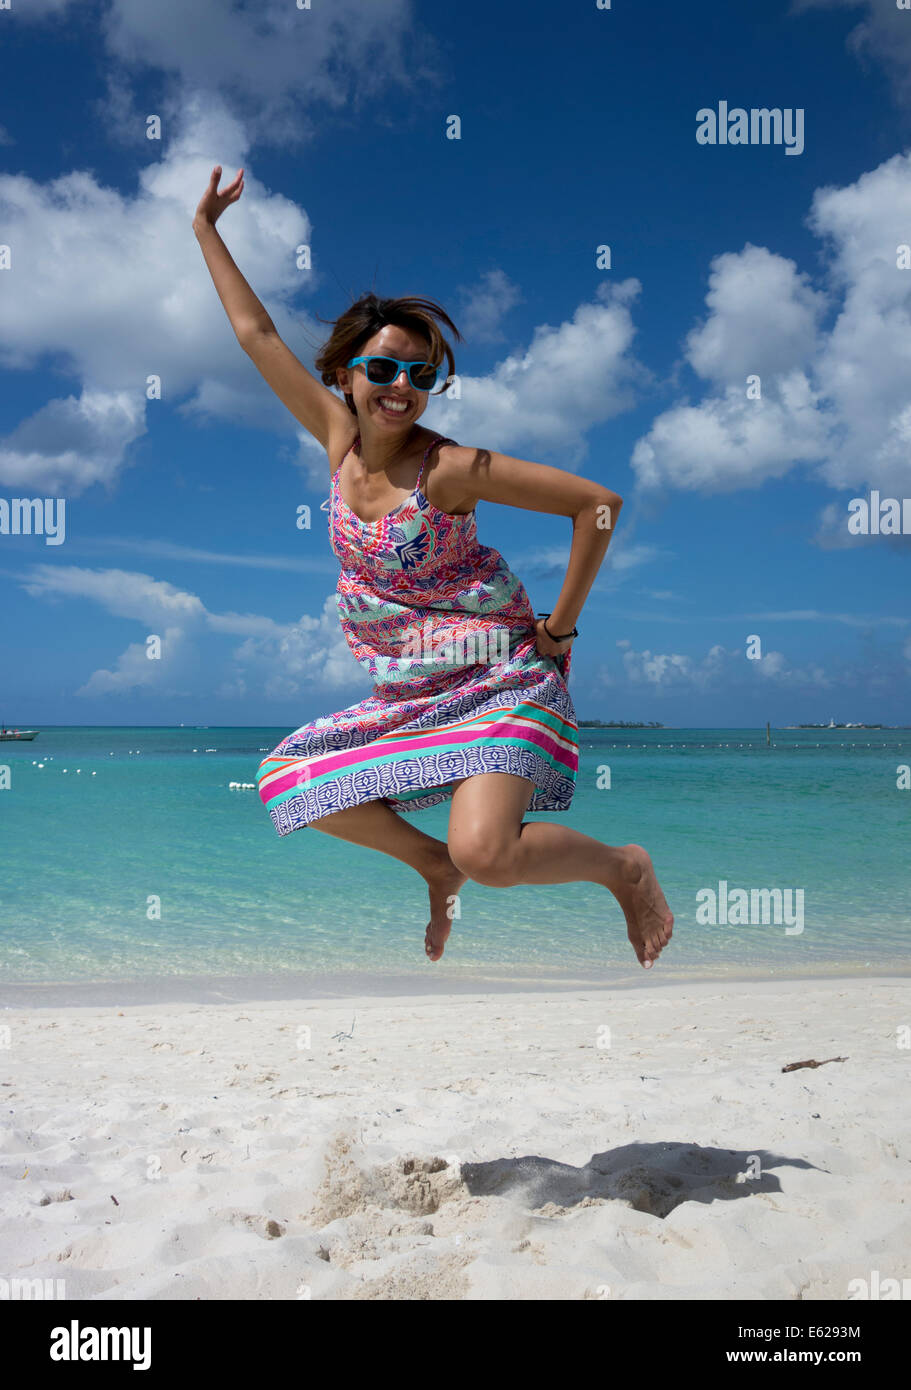 Mädchen springen vor Freude, Cable Beach, The Bahamas Stockfoto